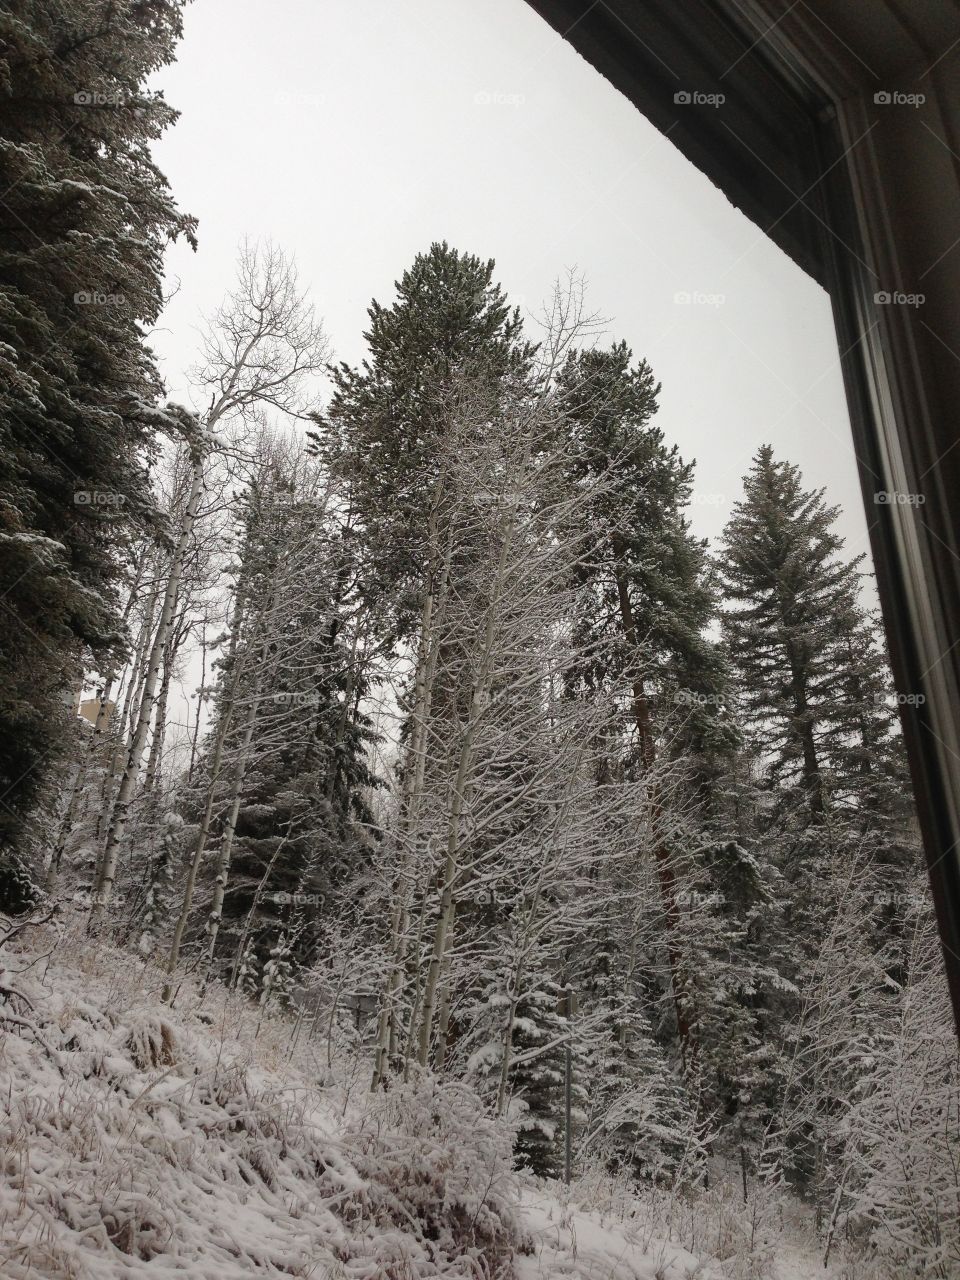 Winter trees in Vail Colorado